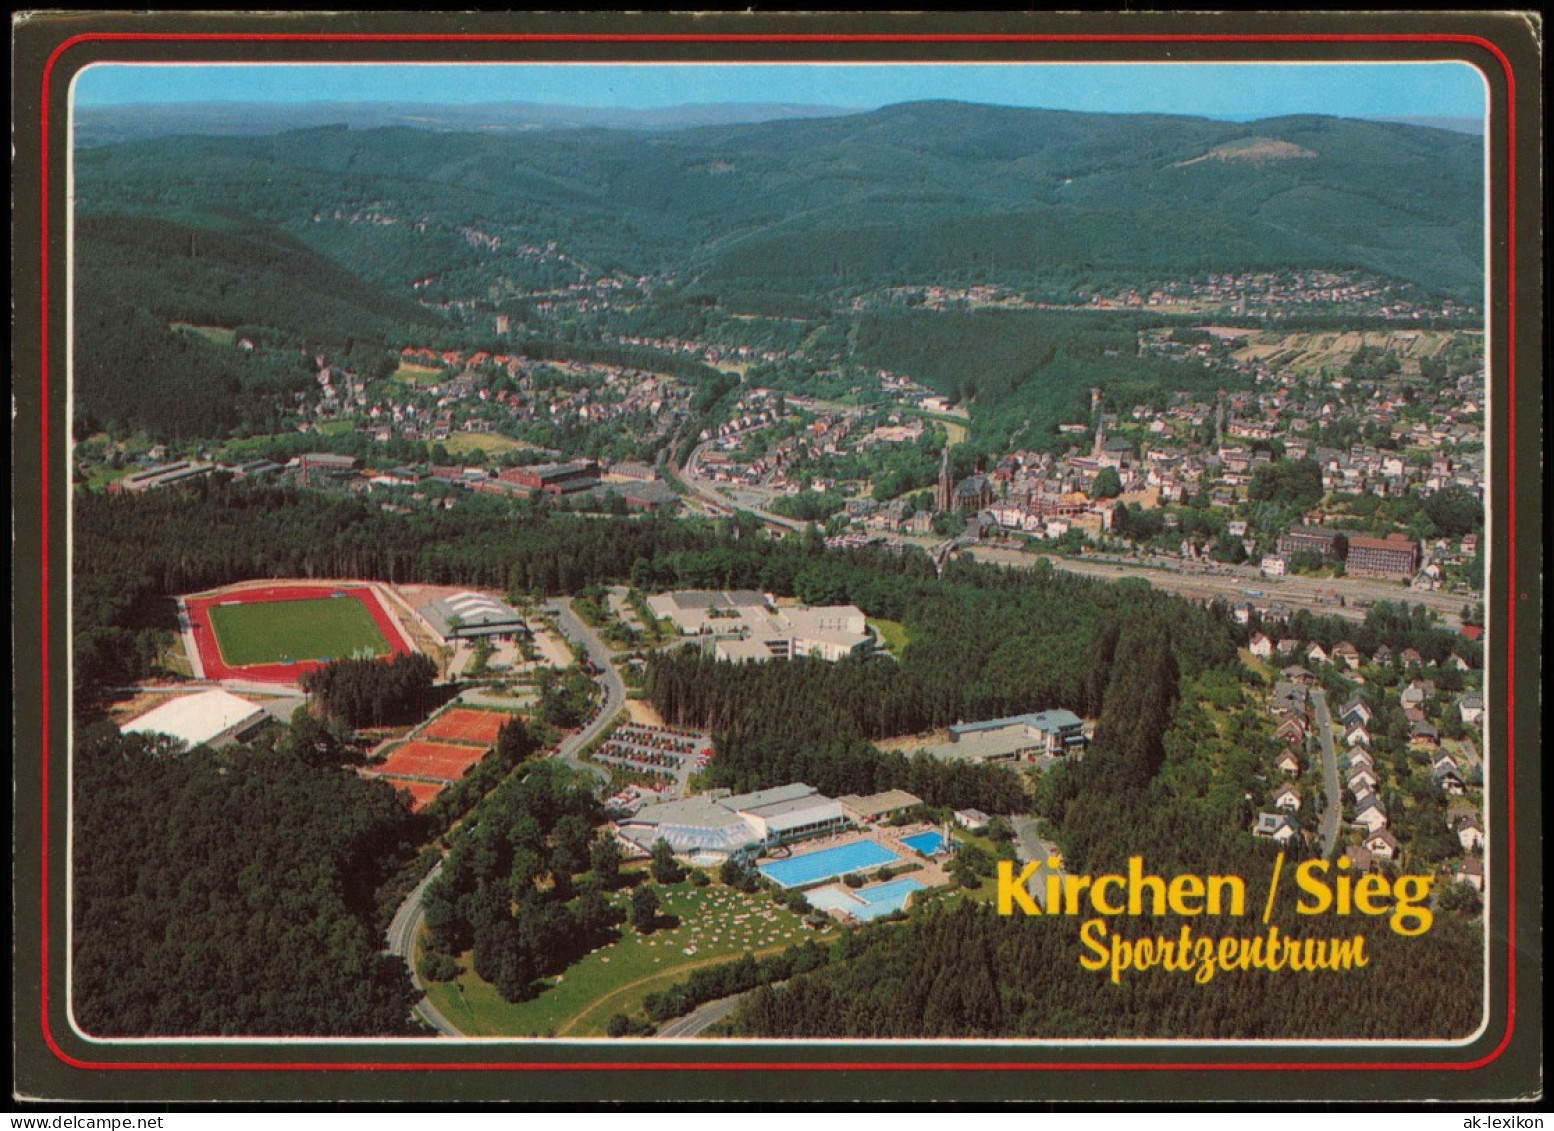 Ansichtskarte Kirchen (Sieg) Luftbild Luftaufnahme Mit Sportzentrum 1990 - Kirchen